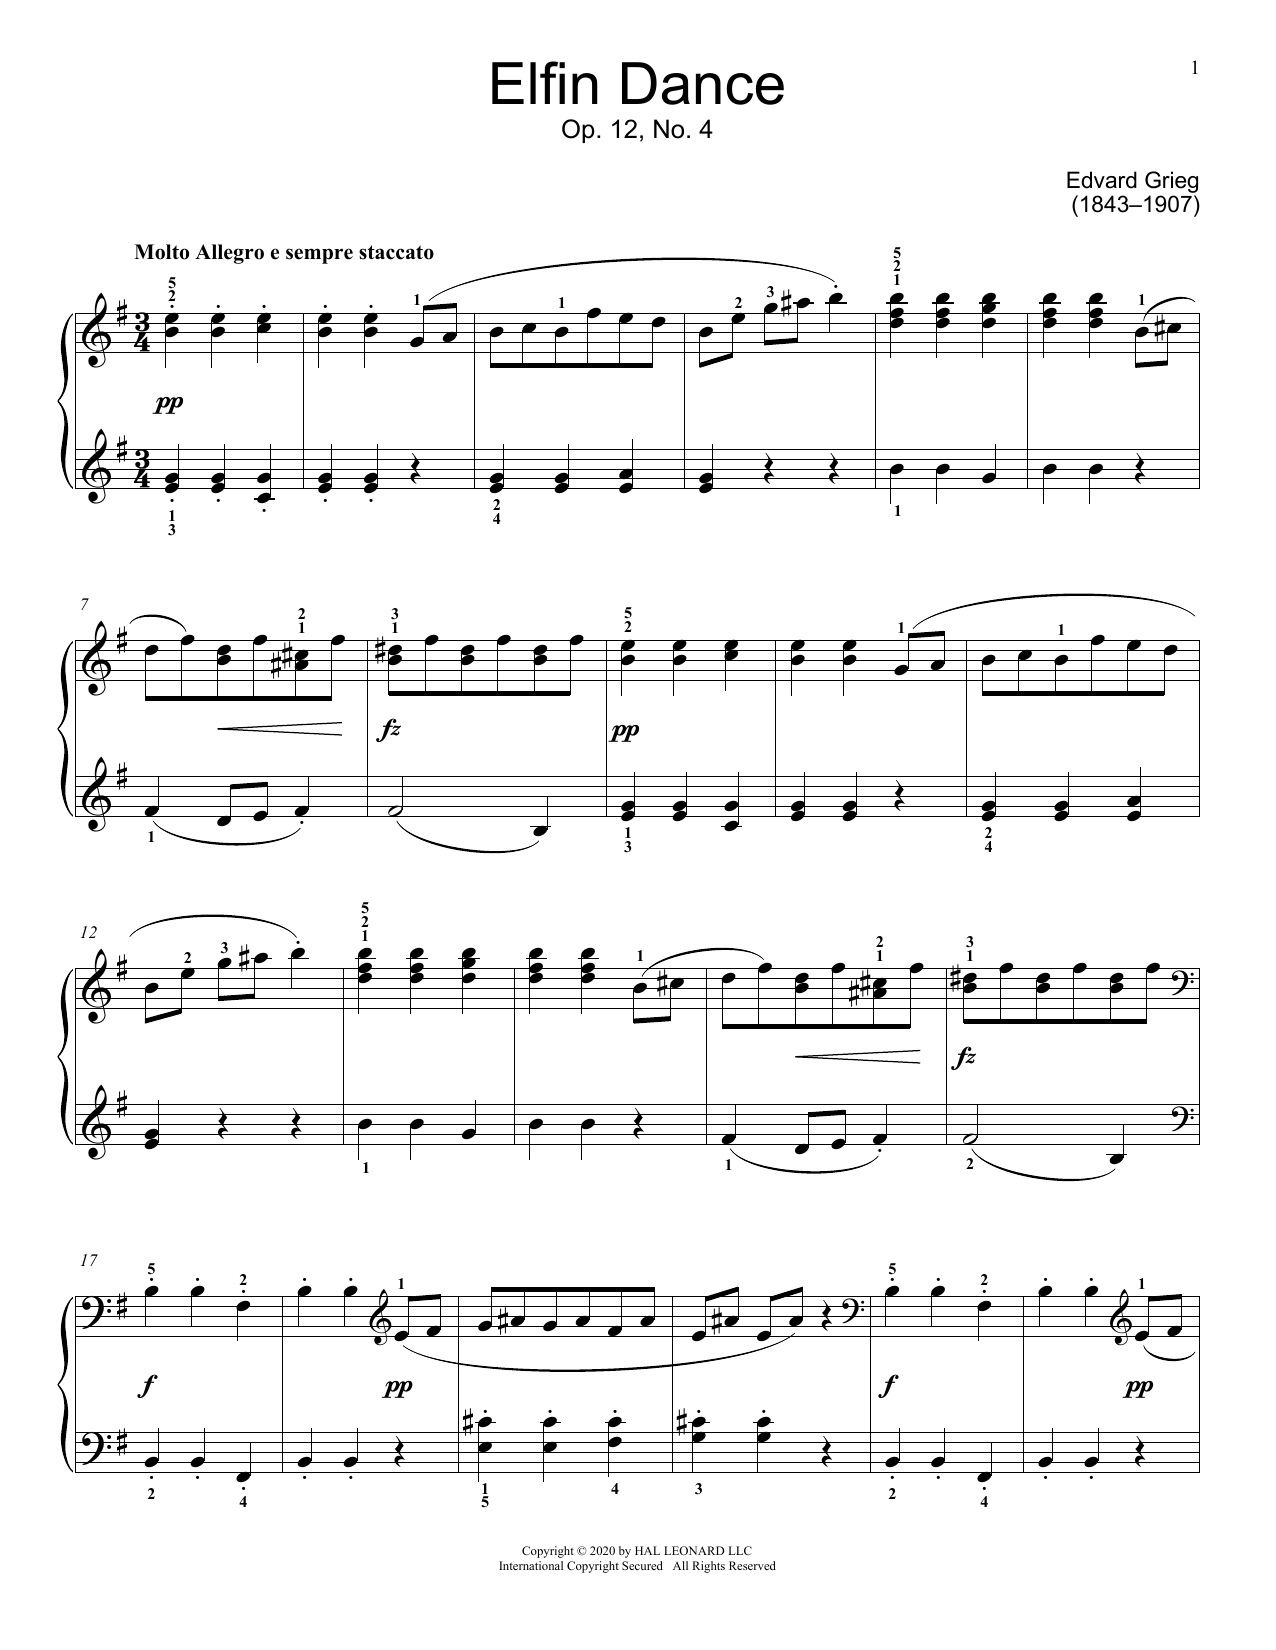 Download Edvard Grieg Elfin Dance Sheet Music